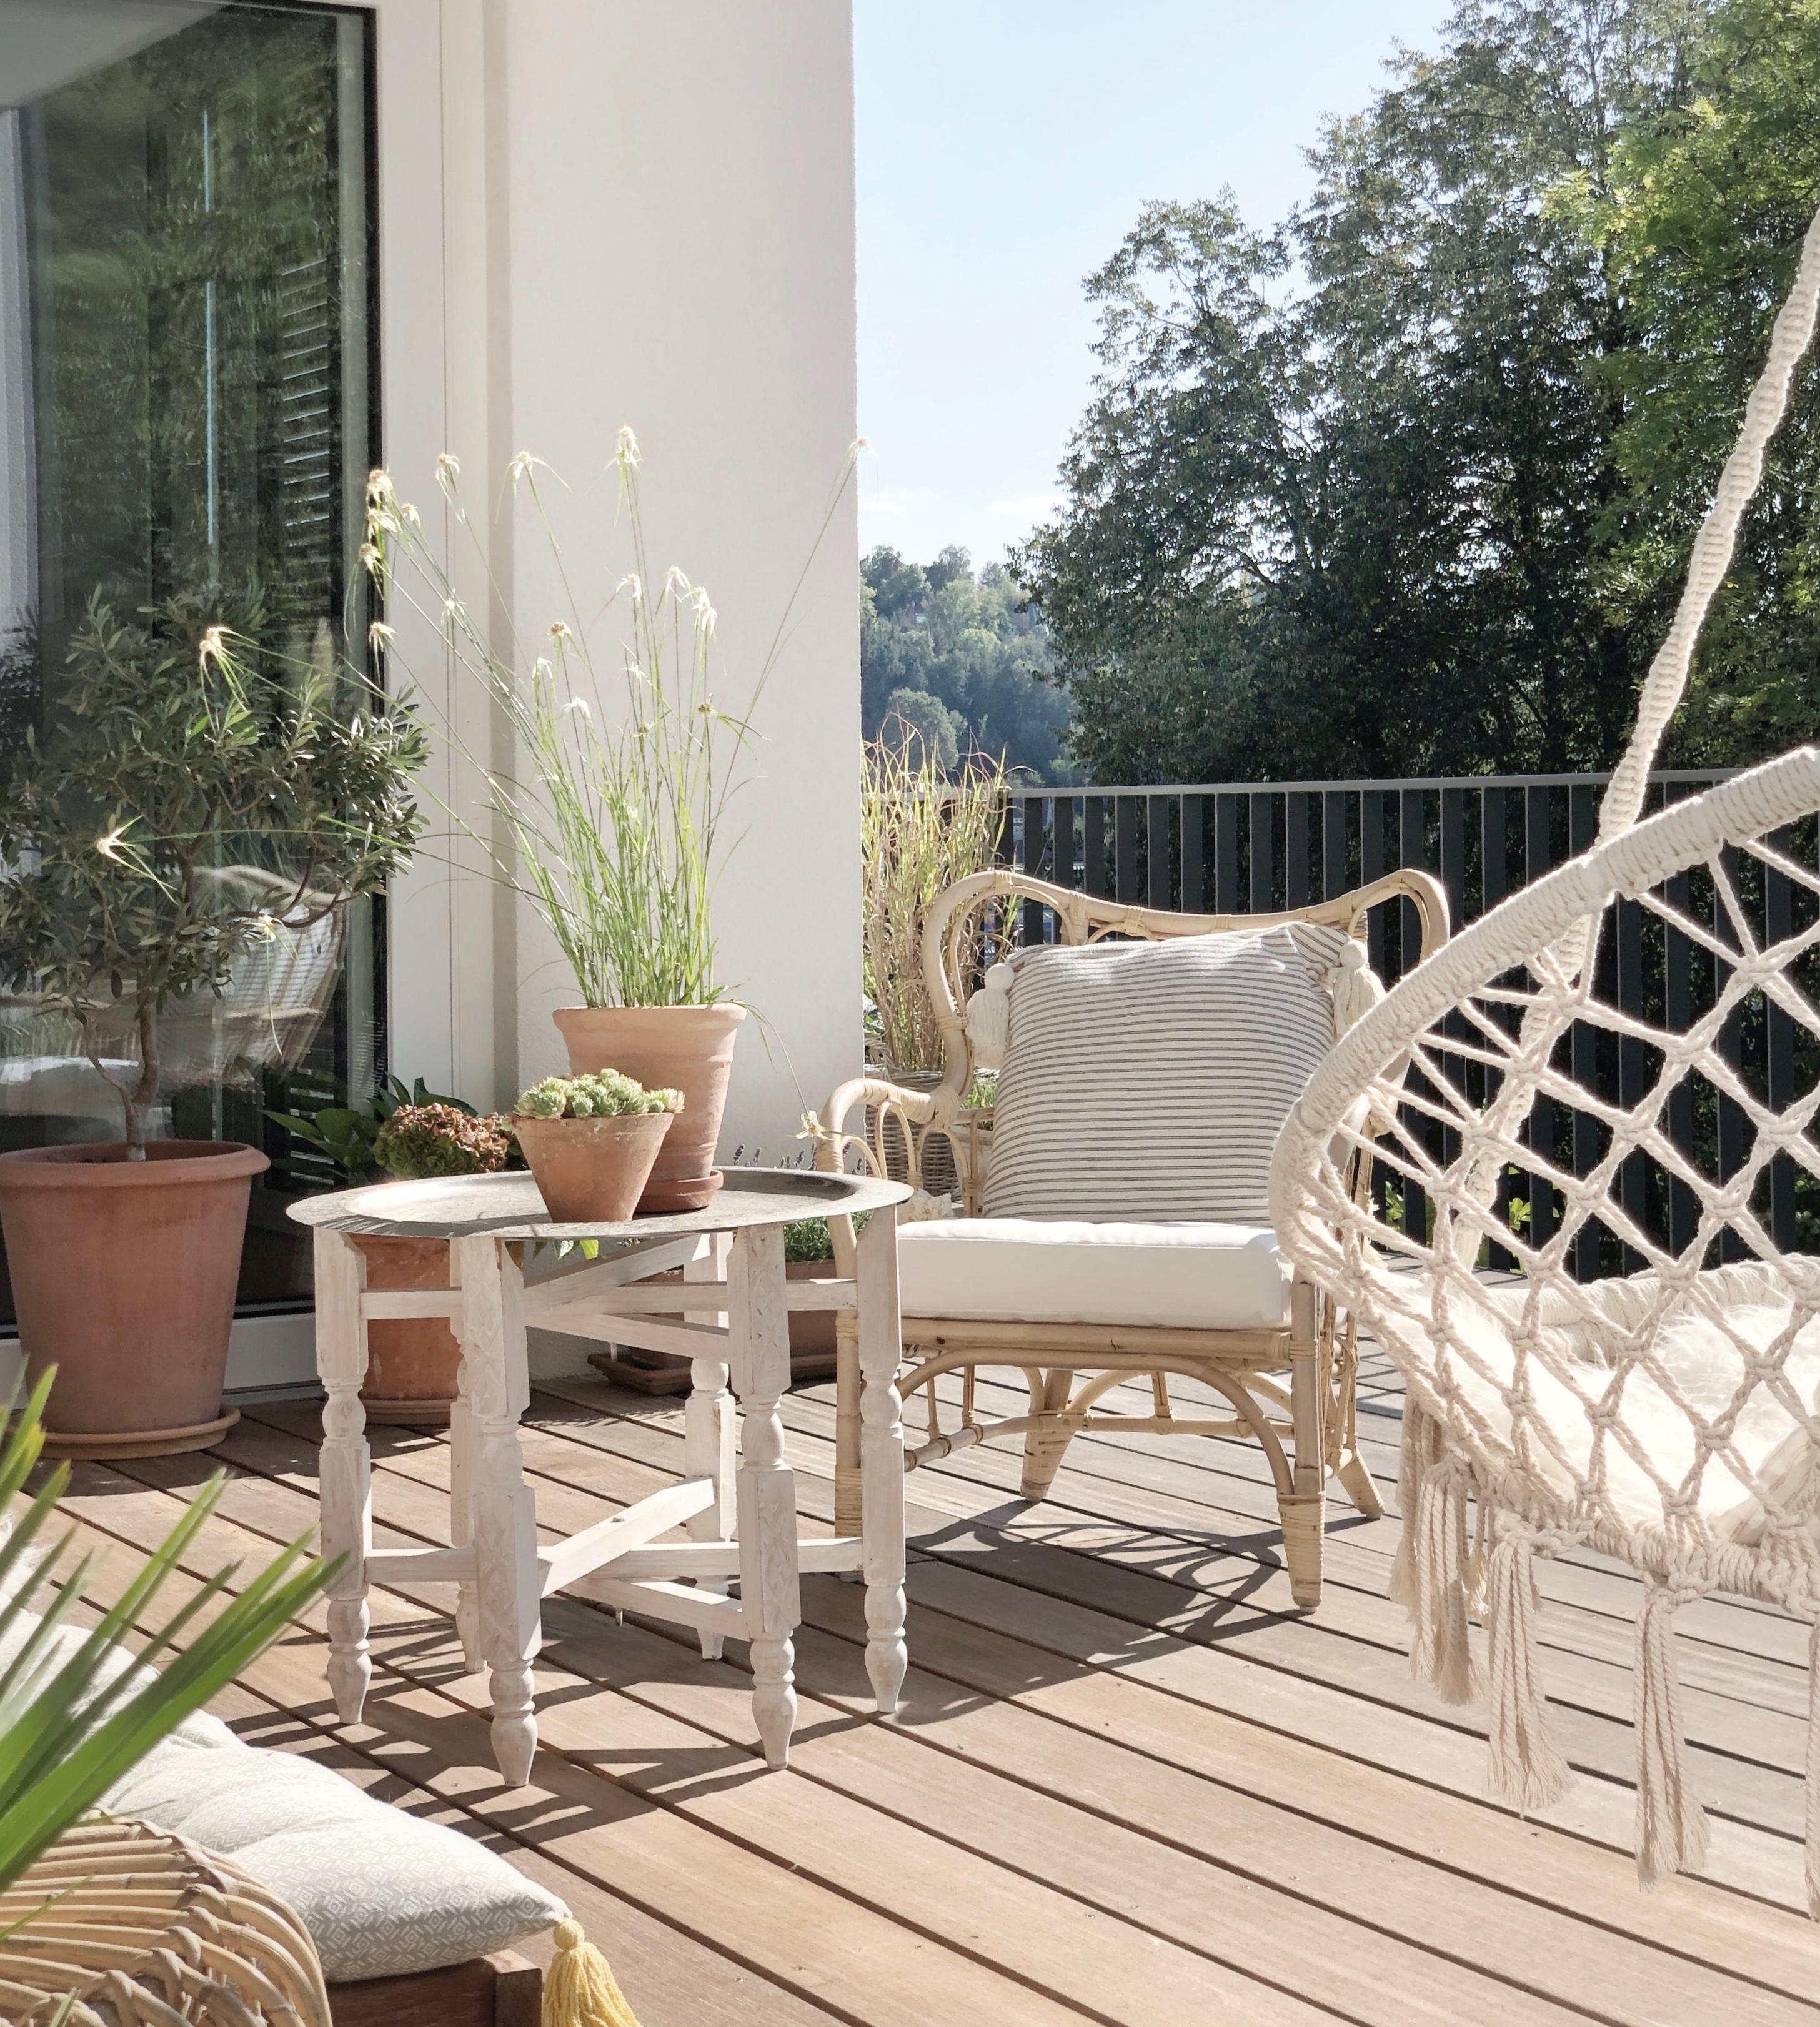 Die herbstliche Sonne genießen auf dem neuen Ikea-Sessel...
#ikea#terrasse#holzterrasse#rattan#herbst#freisitz